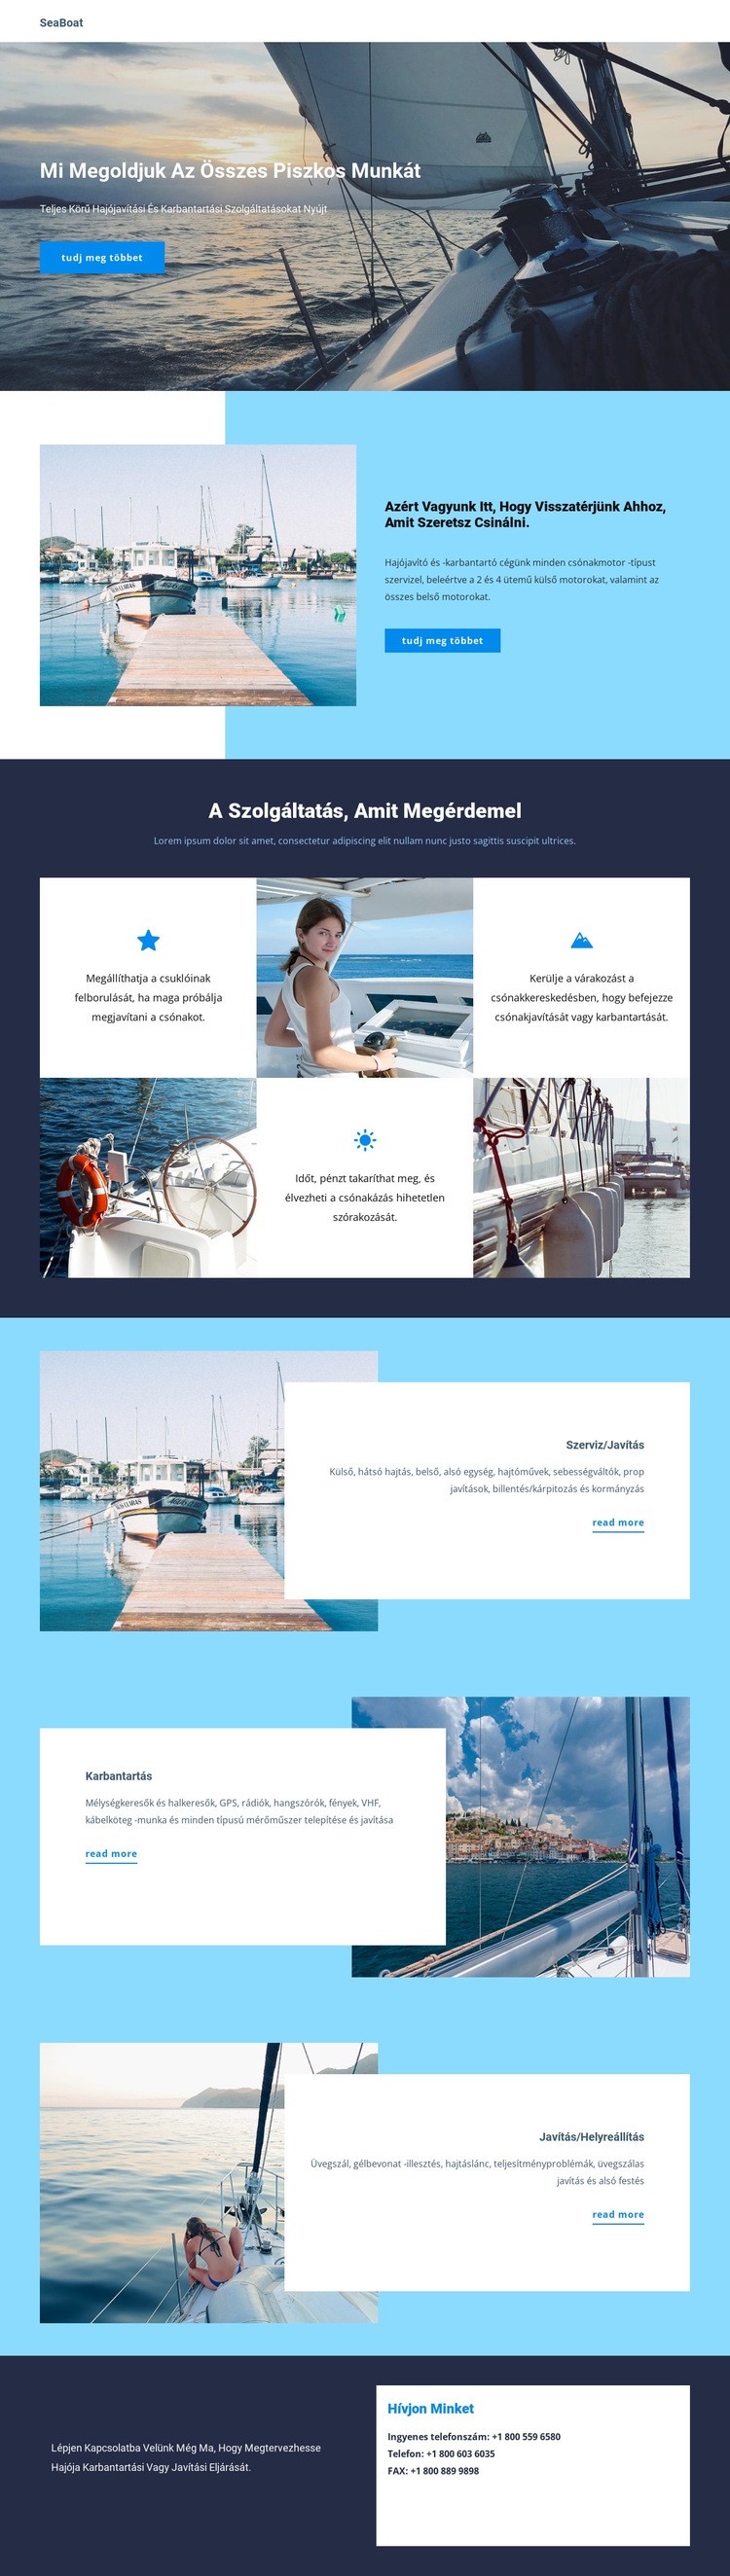 Utazás a Seaboat -on WordPress Téma